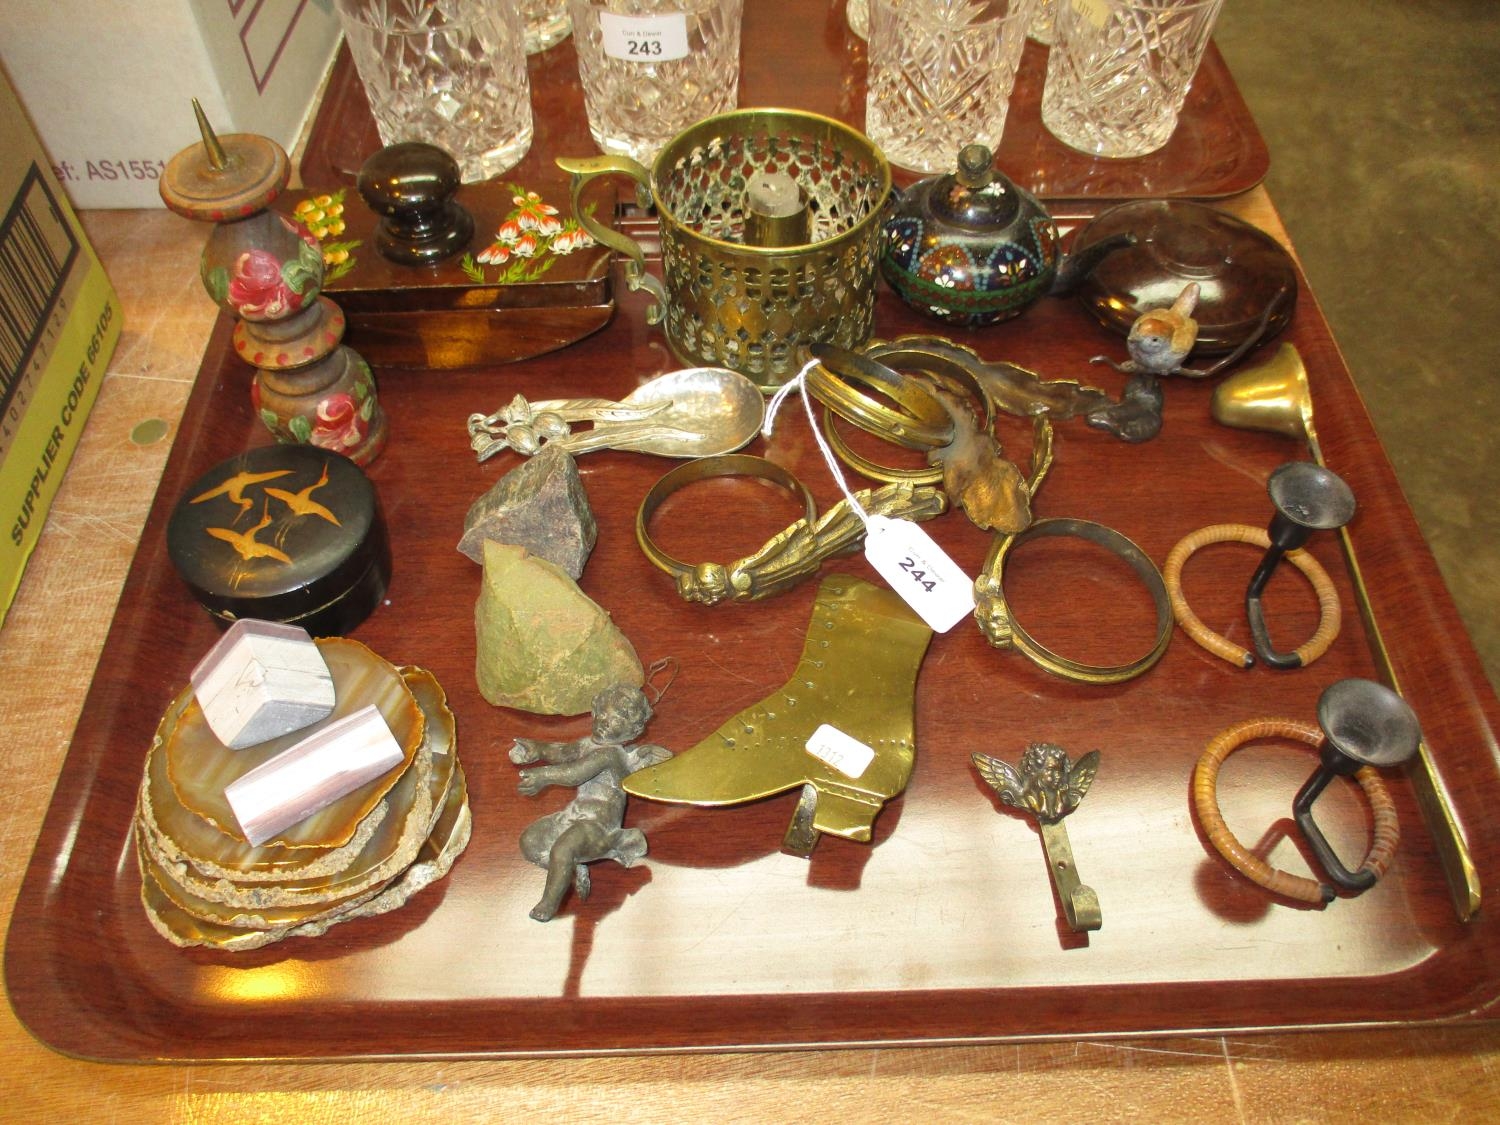 Miniature Cloisonne Enamel Teapot, Other Metalwares, Agates etc